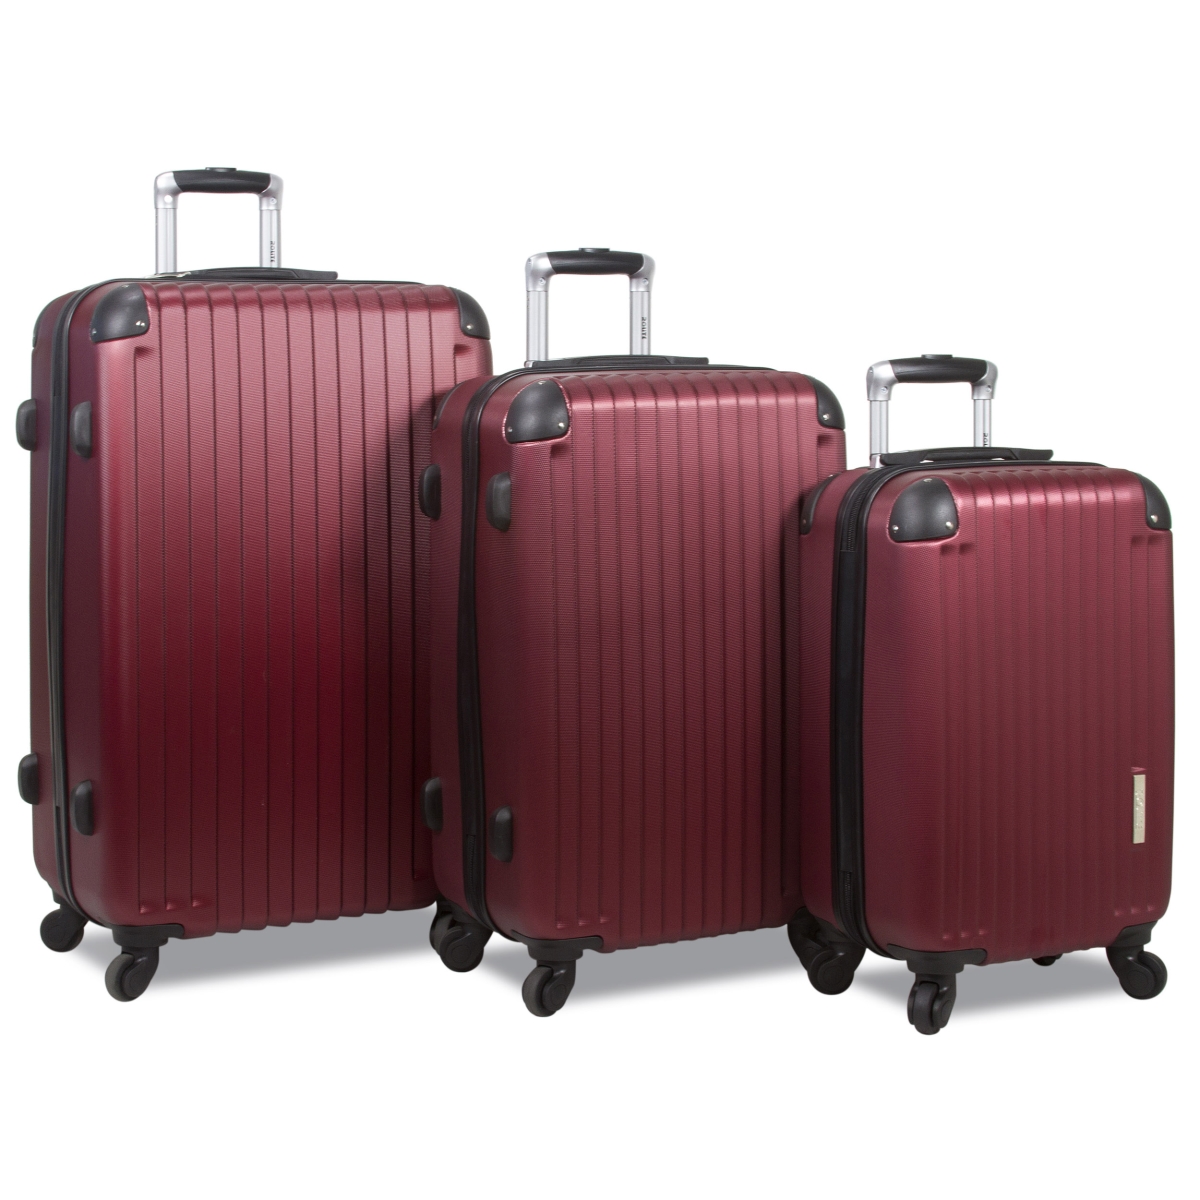 25rl-609-burgundy Prism Hardside Spinner Combination Lock Luggage Set - Burgundy, 3 Piece